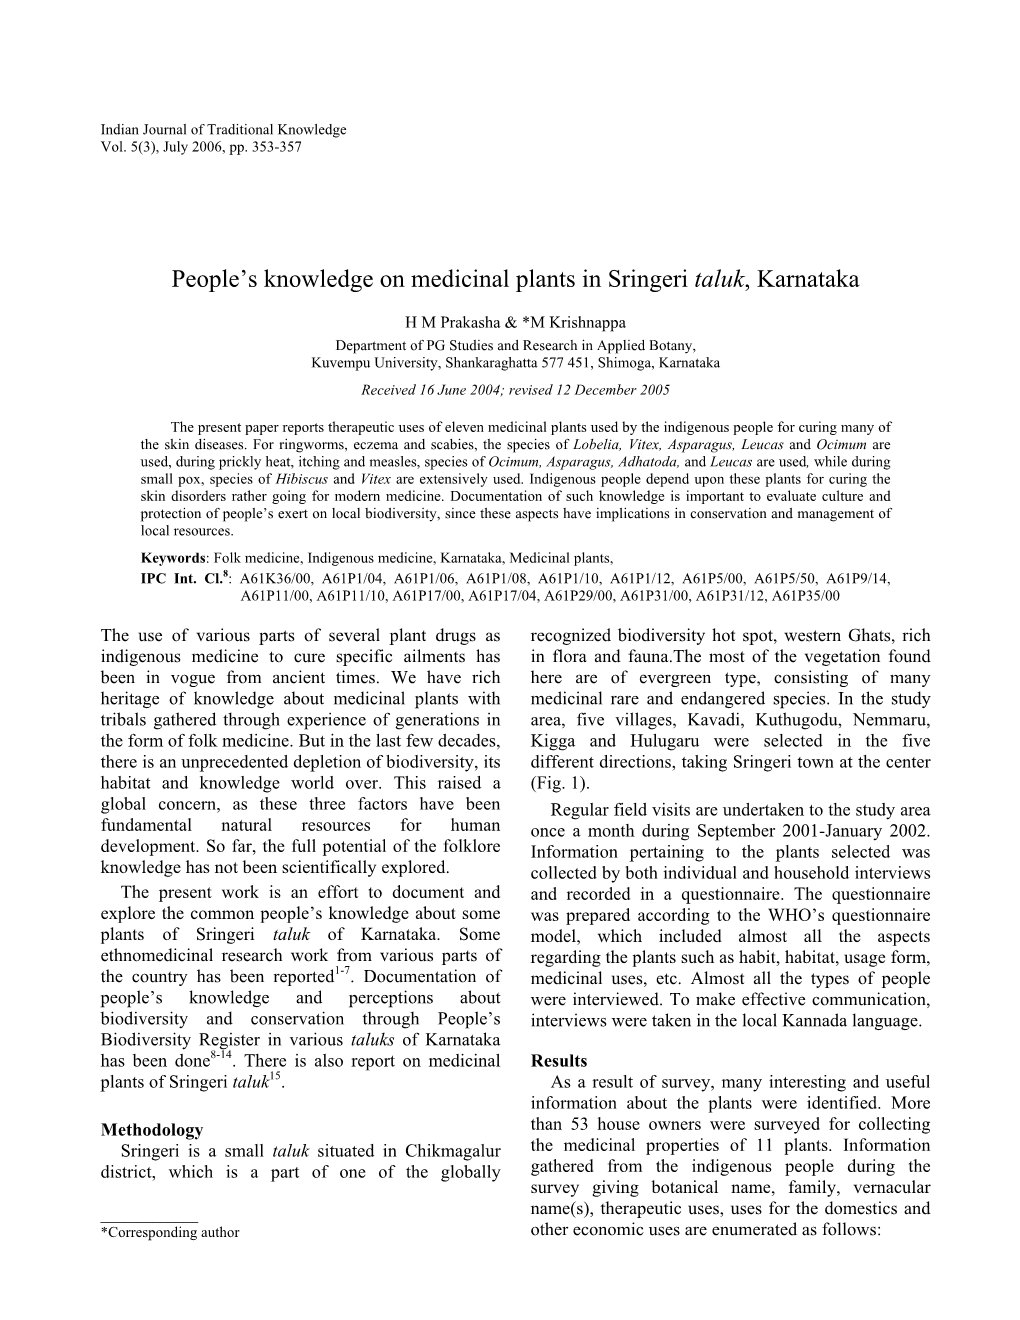 People's Knowledge on Medicinal Plants in Sringeri Taluk, Karnataka